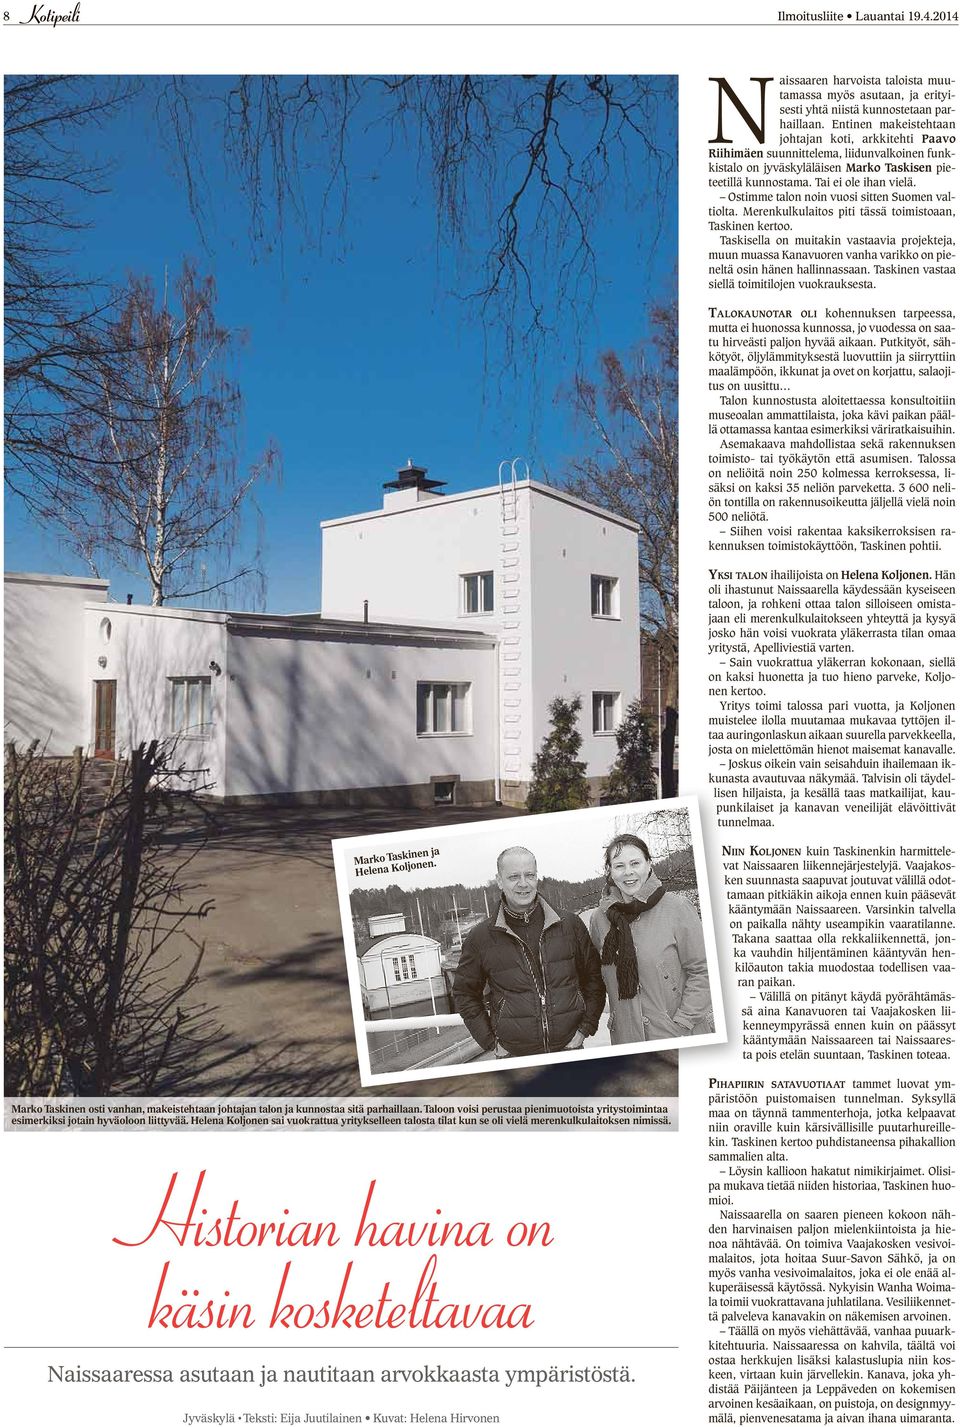 Ostimme talon noin vuosi sitten Suomen valtiolta. Merenkulkulaitos piti tässä toimistoaan, Taskinen kertoo.